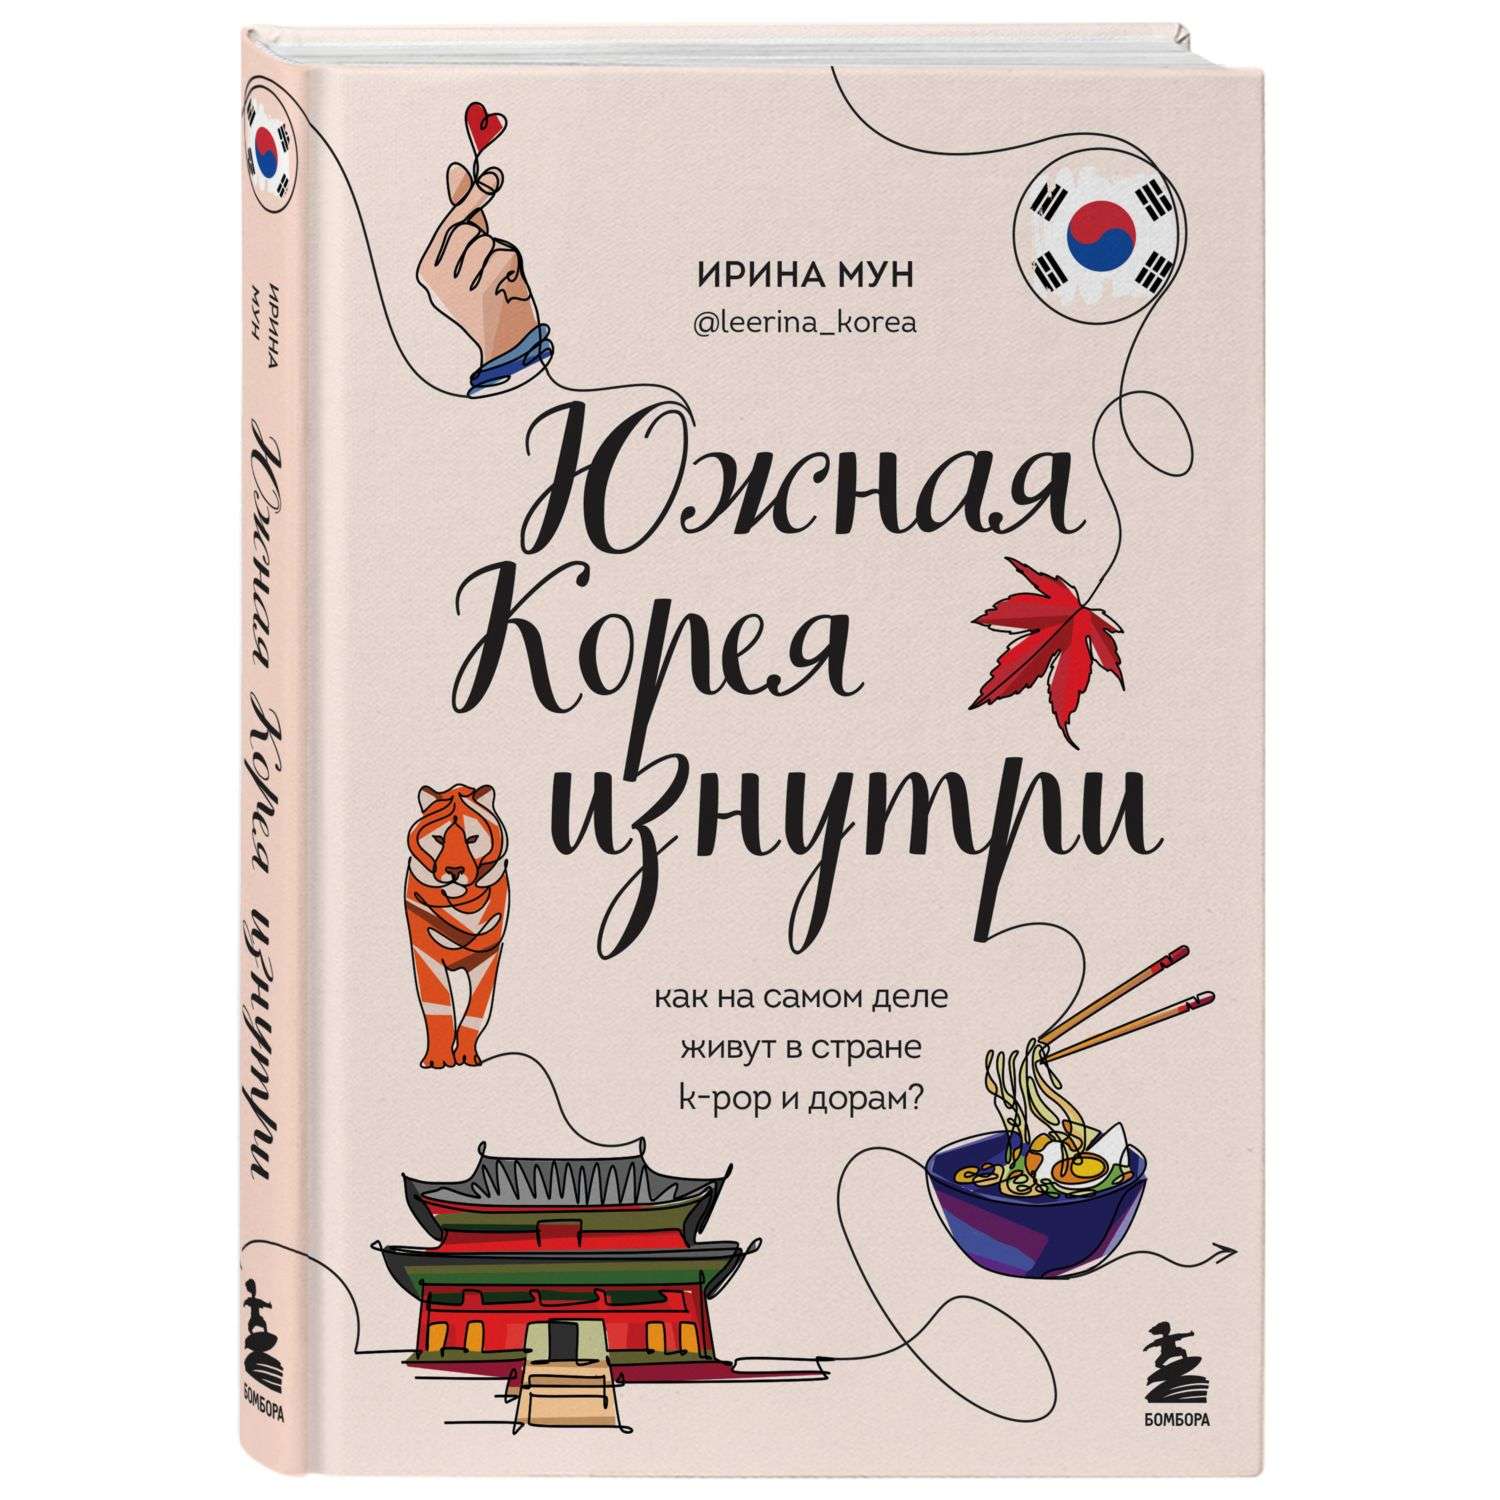 Книга БОМБОРА Южная Корея изнутри Как на самом деле живут в стране kpop - фото 1